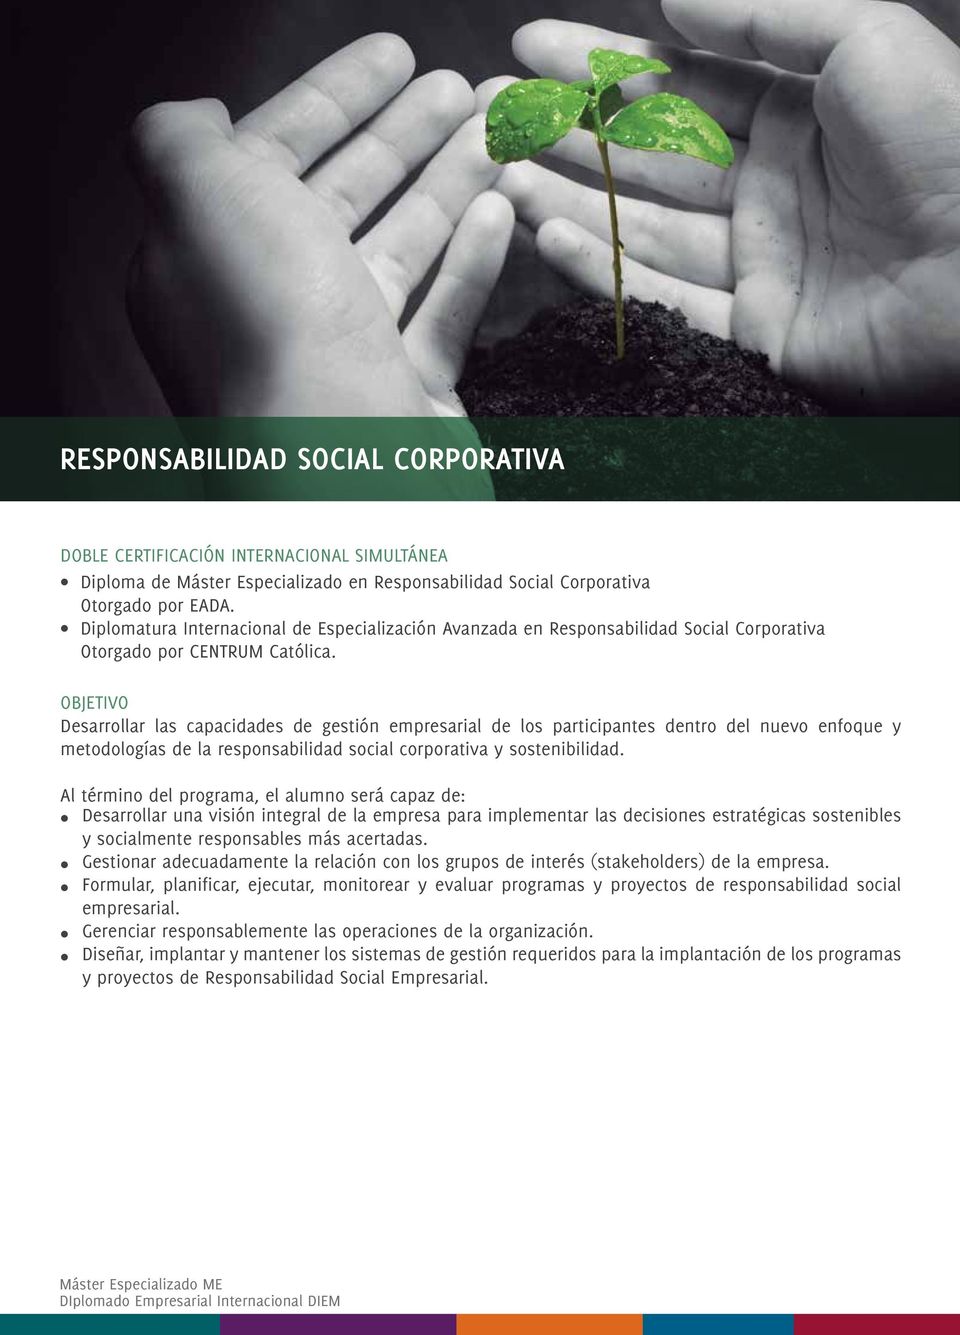 OBJETIVO Desarrollar las capacidades de gestión empresarial de los participantes dentro del nuevo enfoque y metodologías de la responsabilidad social corporativa y sostenibilidad.